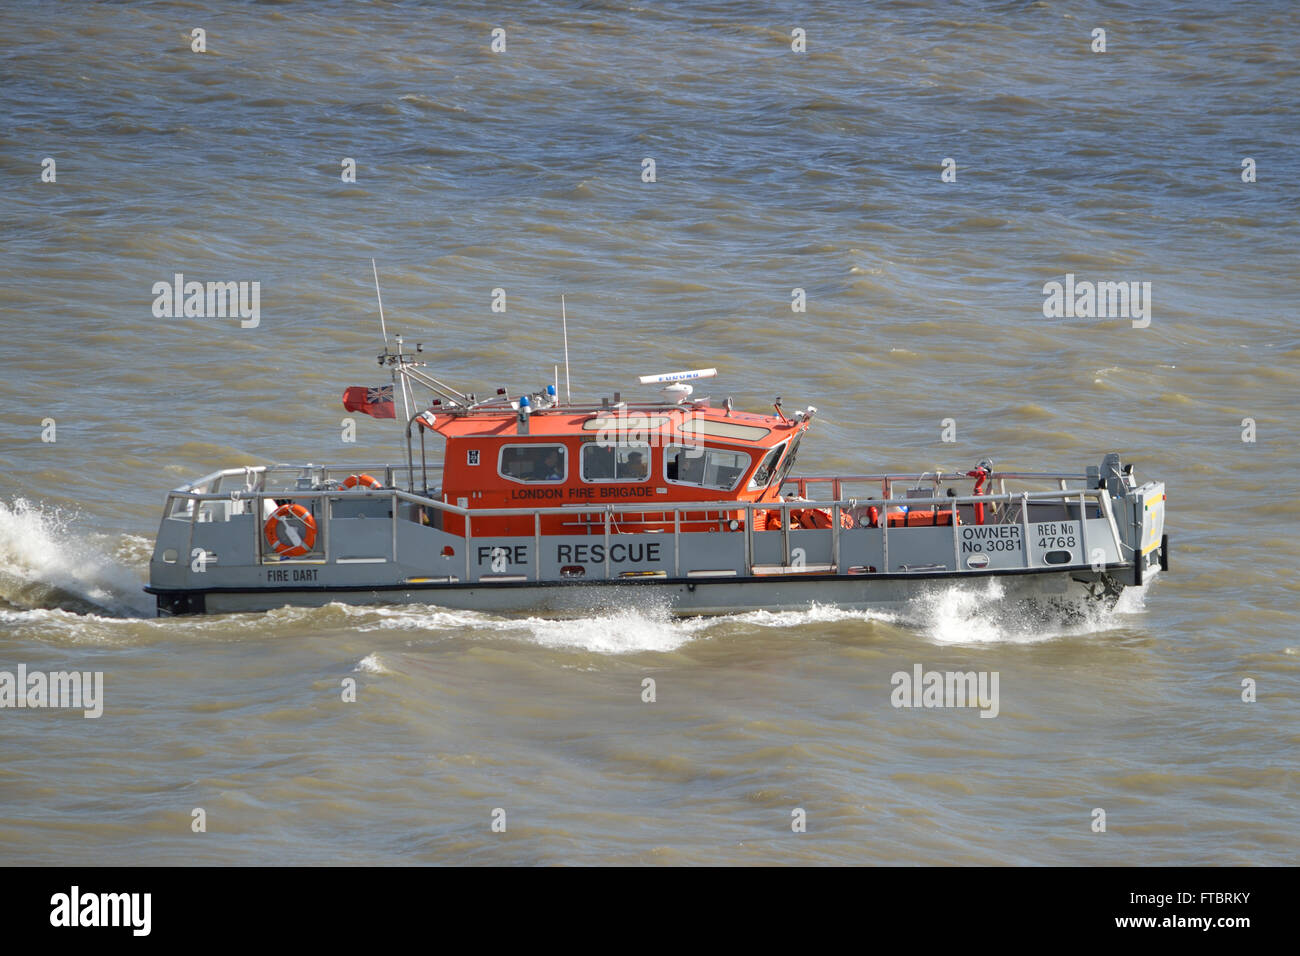 Die Londoner Feuerwehr feuerlöschboot Feuer Dart macht es Weg bis der Themse auf einem a Routine training Reise Stockfoto